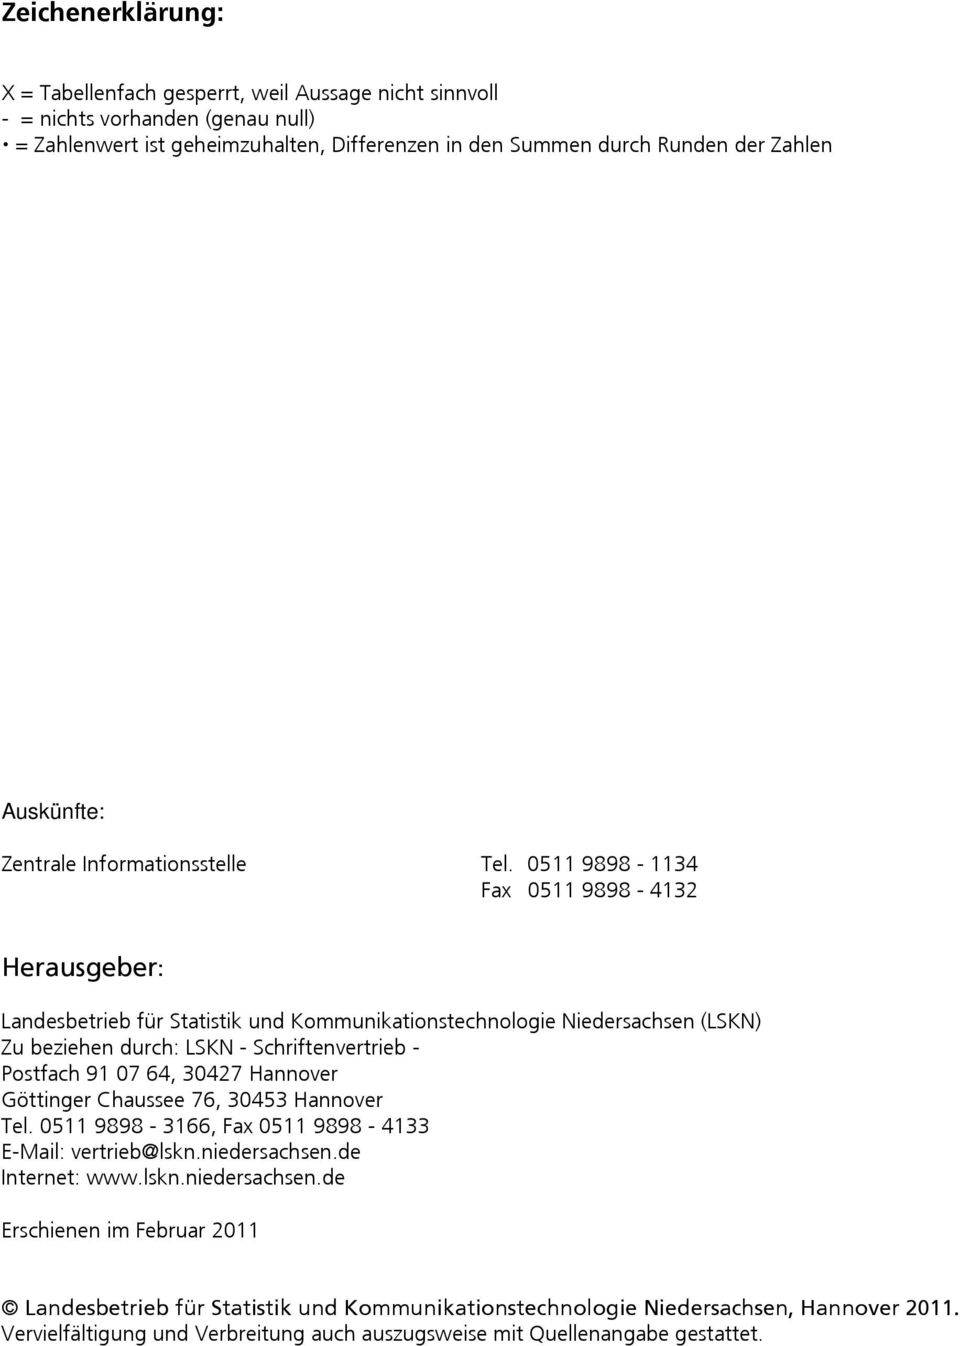 0511 9898-1134 Fax 0511 9898-4132 Herausgeber: Landesbetrieb für Statistik und Kommunikationstechnologie Niedersachsen (LSKN) Zu beziehen durch: LSKN - Schriftenvertrieb - Postfach 91 07 64, 30427